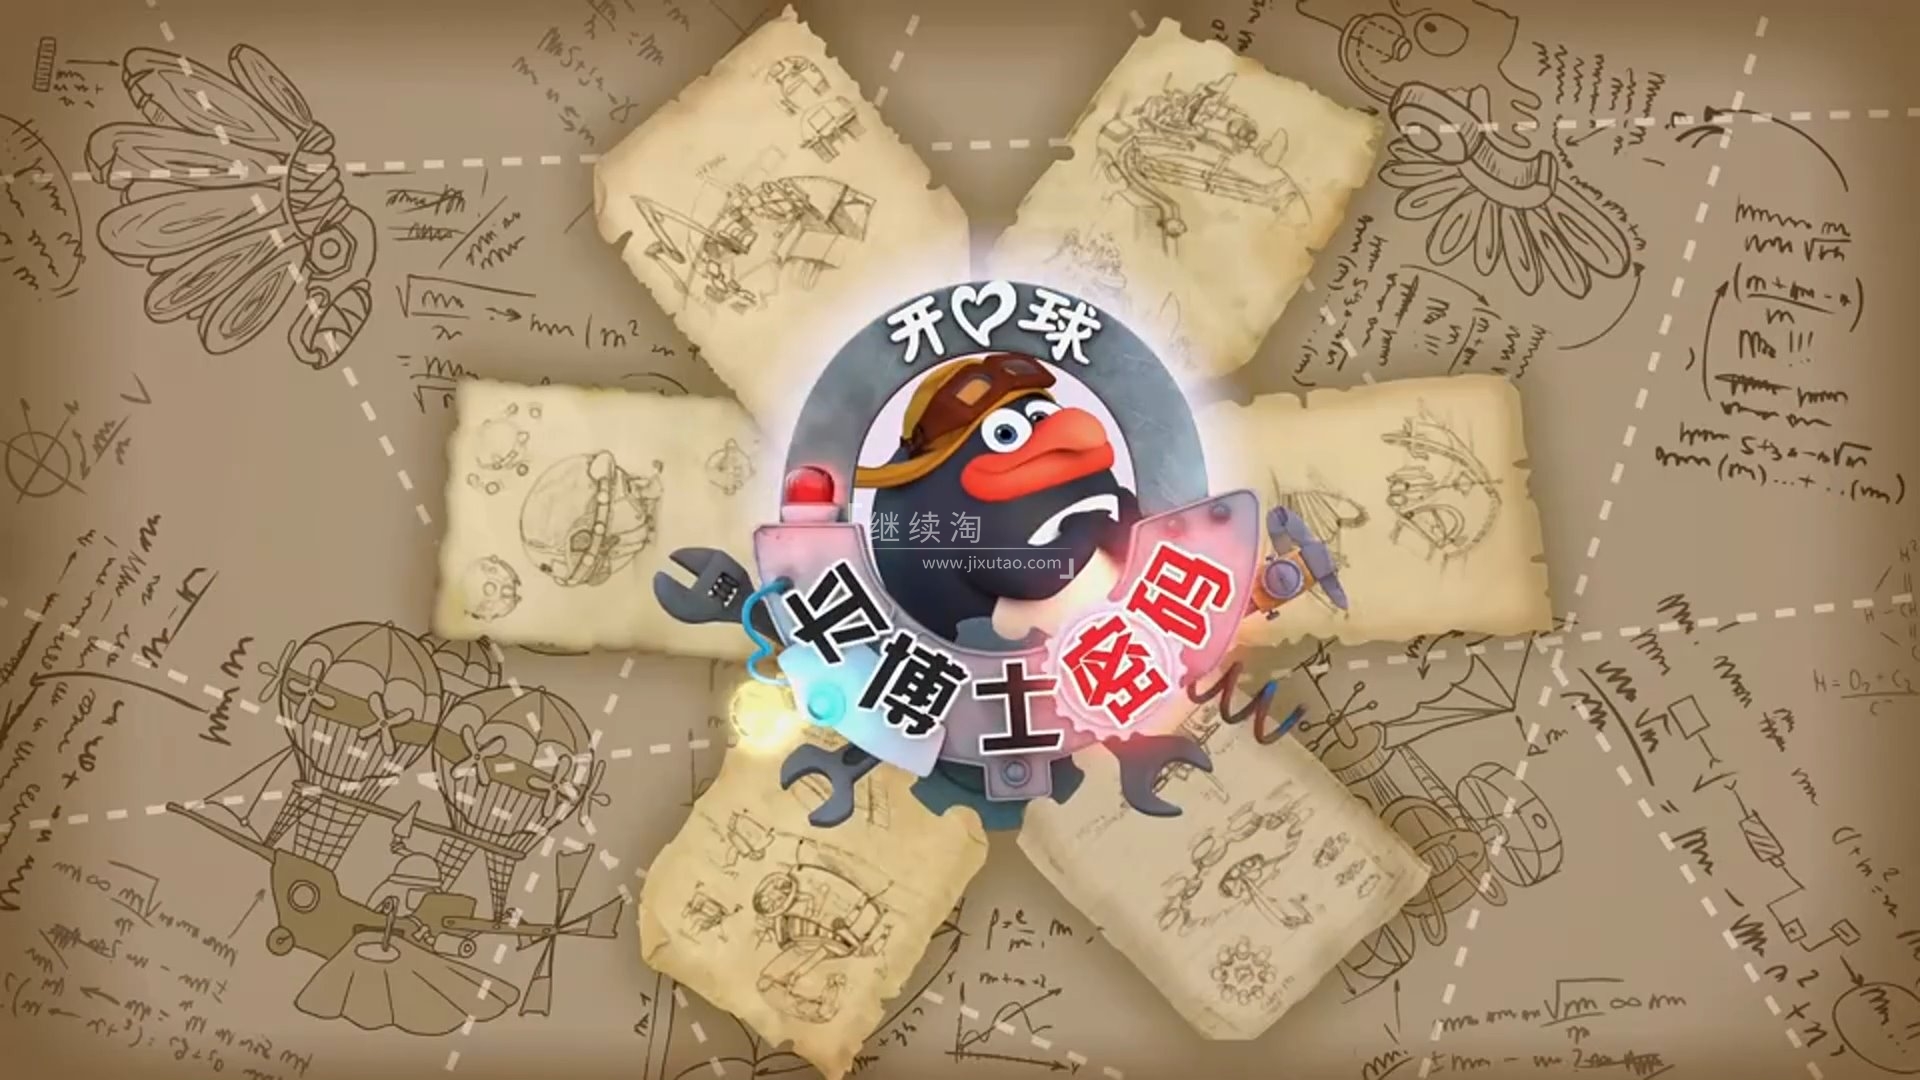 《平博士密码PinCode》科普中文版动画片全二季共104集，高清视频带中文字幕，百度网盘下载！ | 继续淘